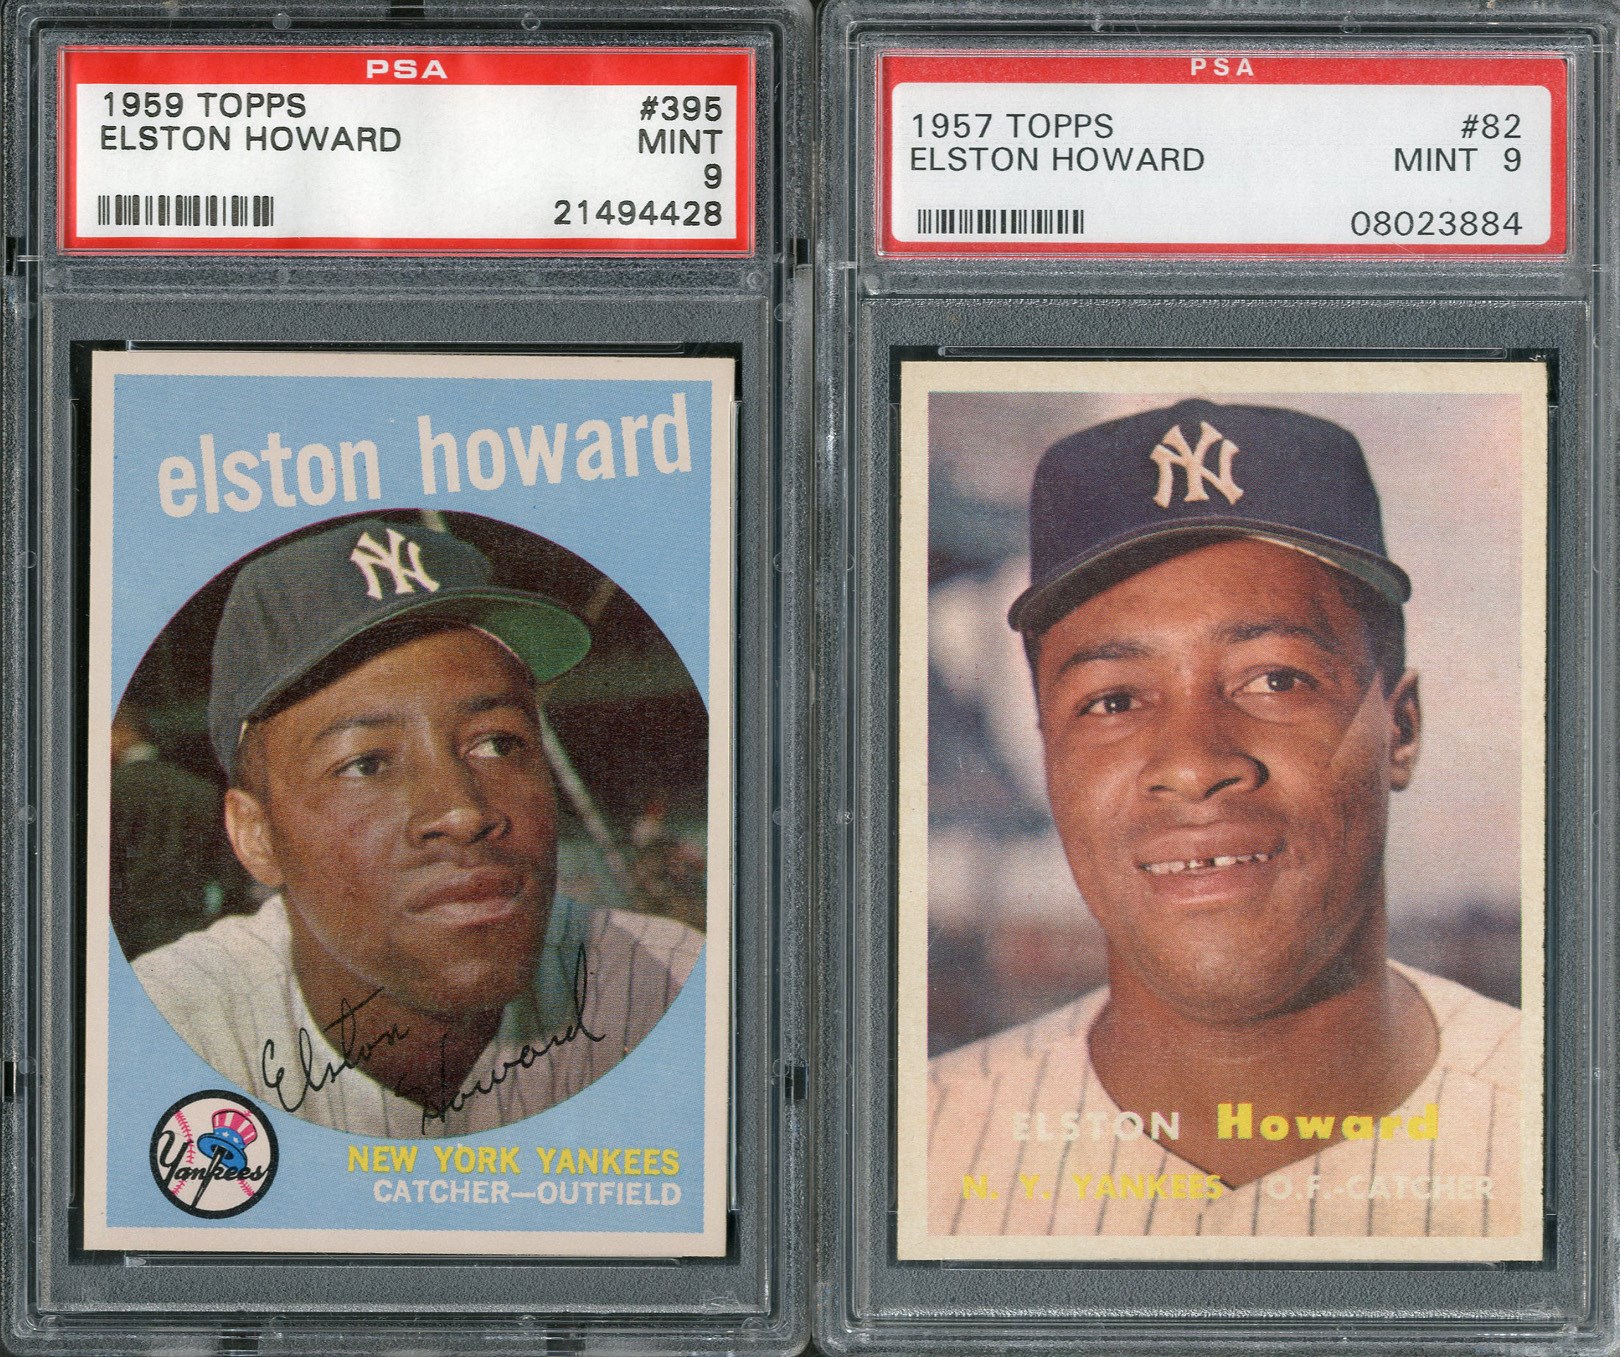 1957 & 1959 Topps Elston Howard (Both PSA MINT 9)